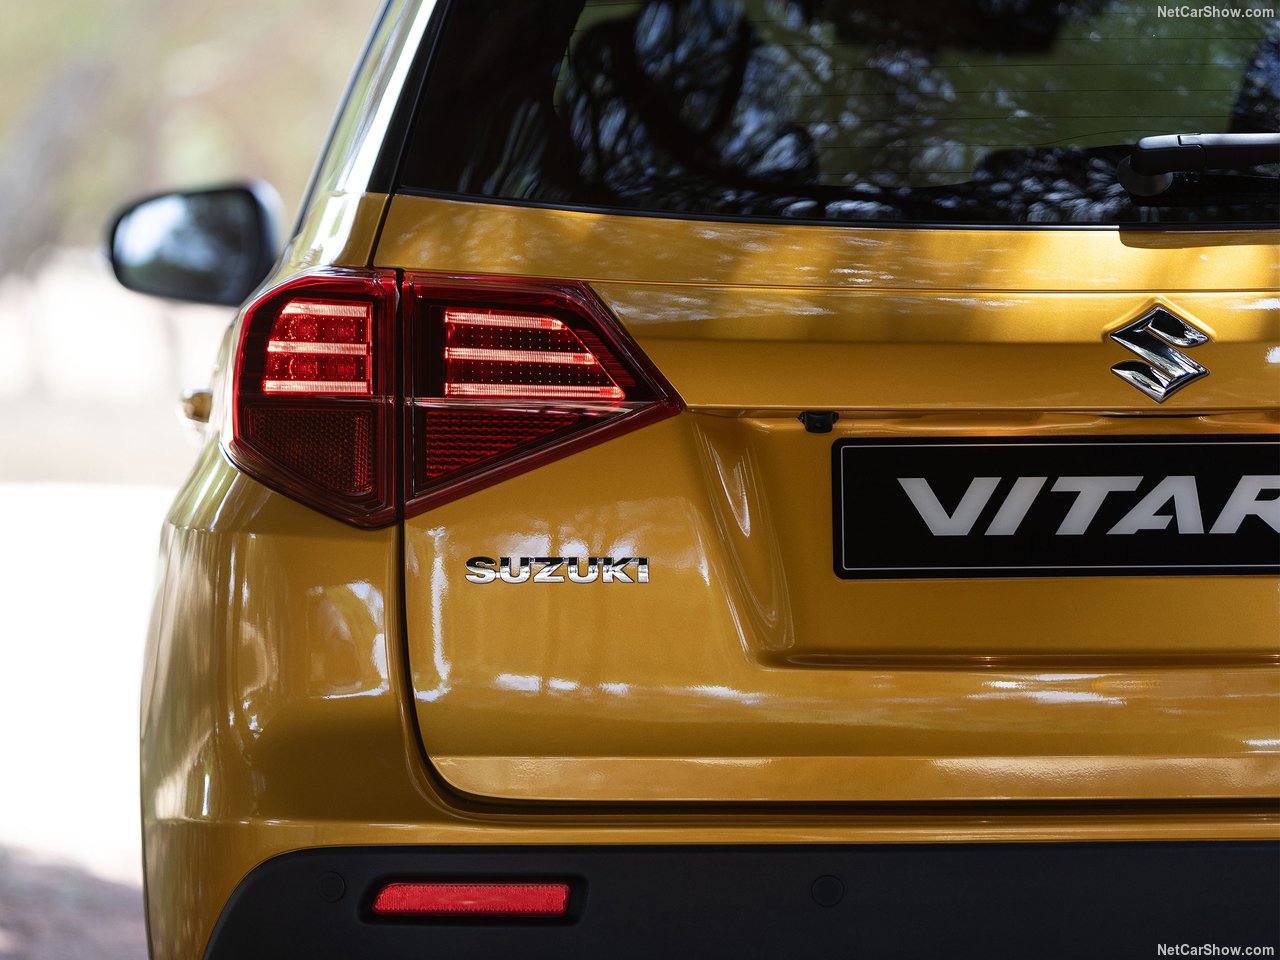 2019 Suzuki Vitara makyajlı haliyle ortaya çıktı! Yeni Suzuki Vitara’nın özellikleri neler?